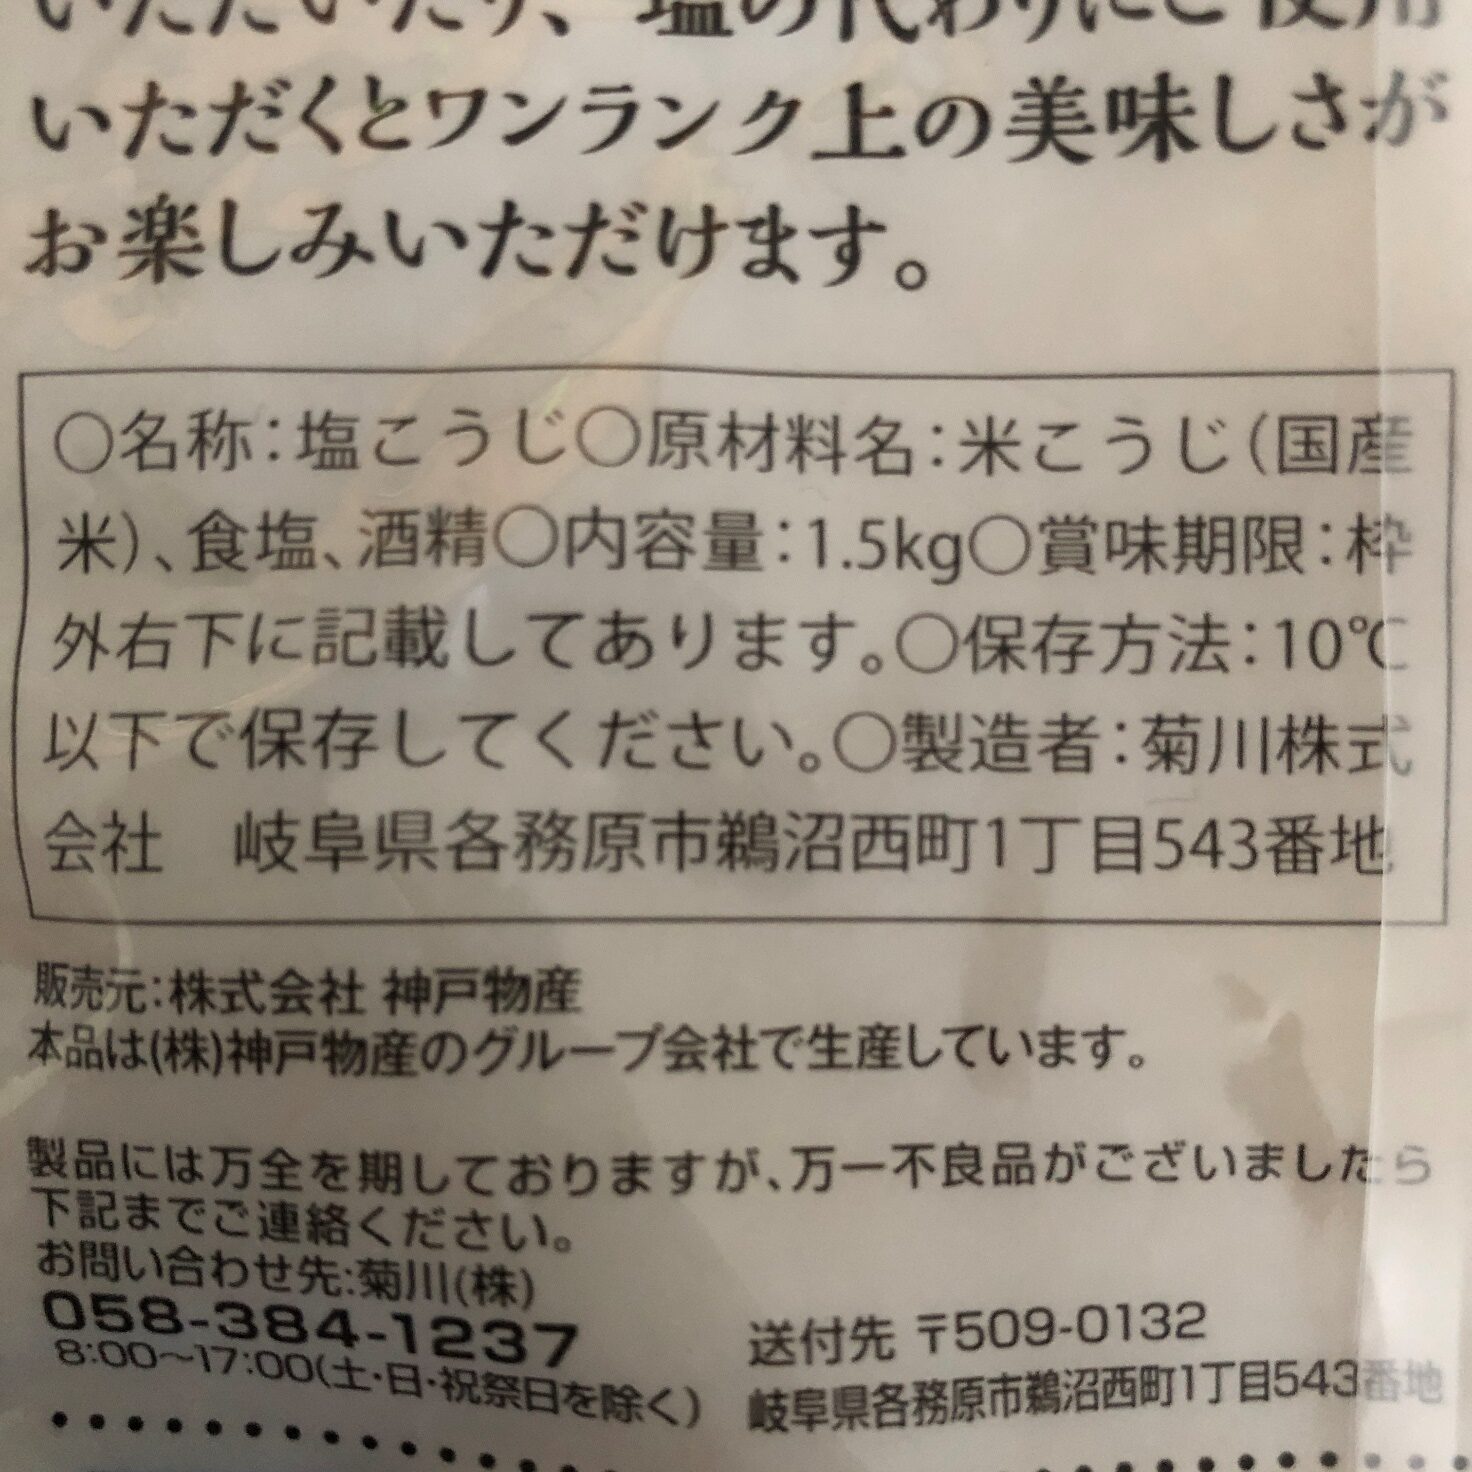 業務スーパーの菊川の塩こうじの原材料名と製造者名の表記